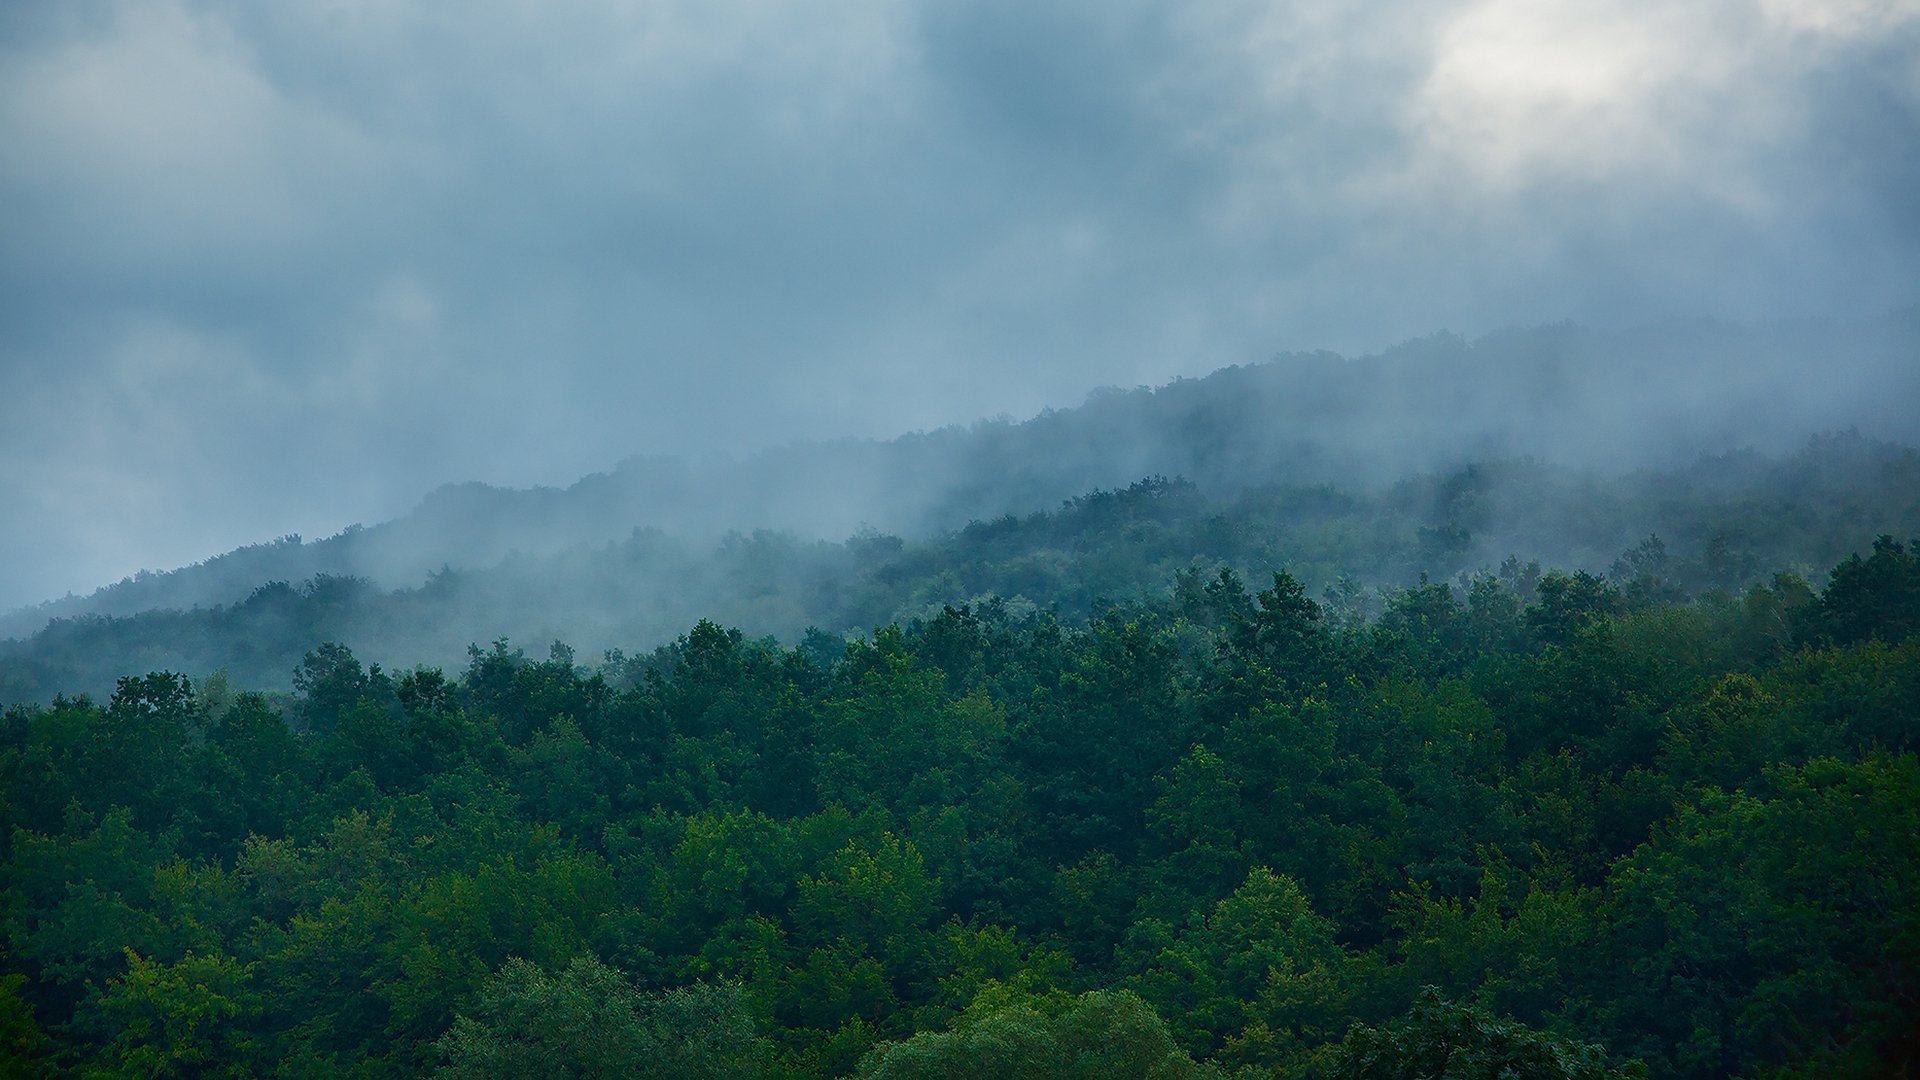 природа деревья лес туман зелень зеленый украина горы дымка склон холм холмы облака синий туманный гора утро утром